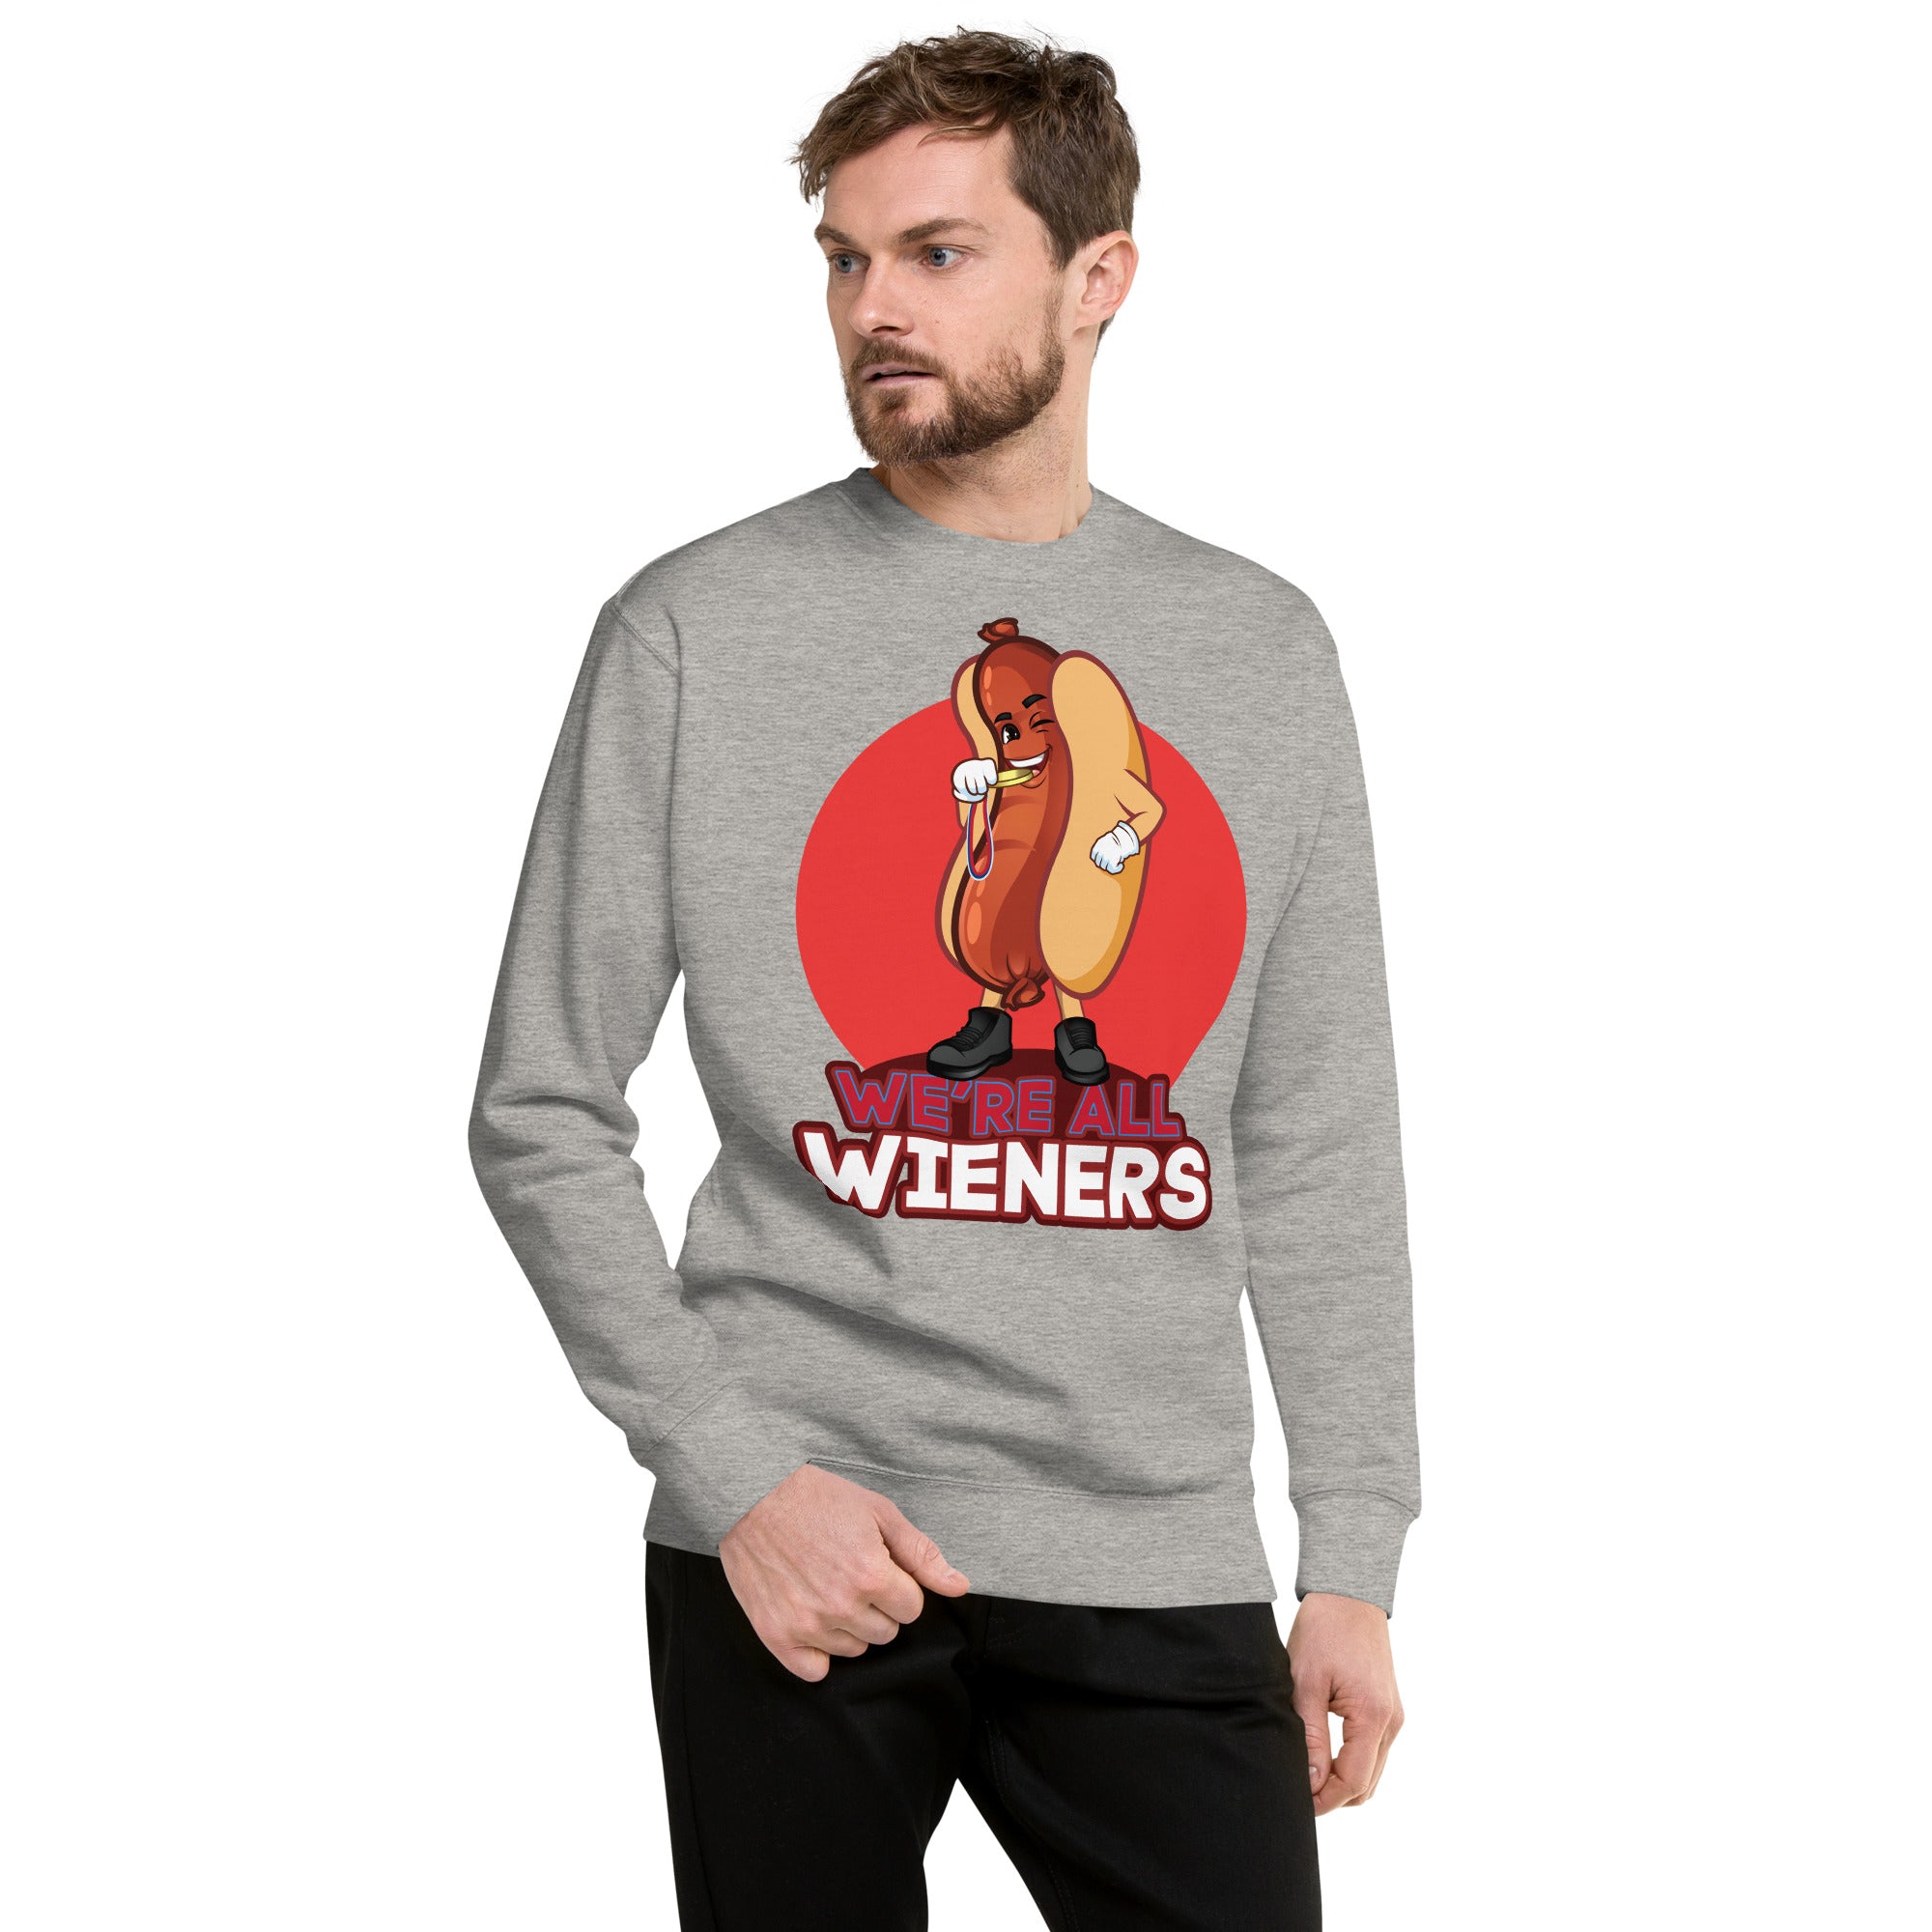 We're All Wiener's Men's Original Crew Sweatshirt - Red